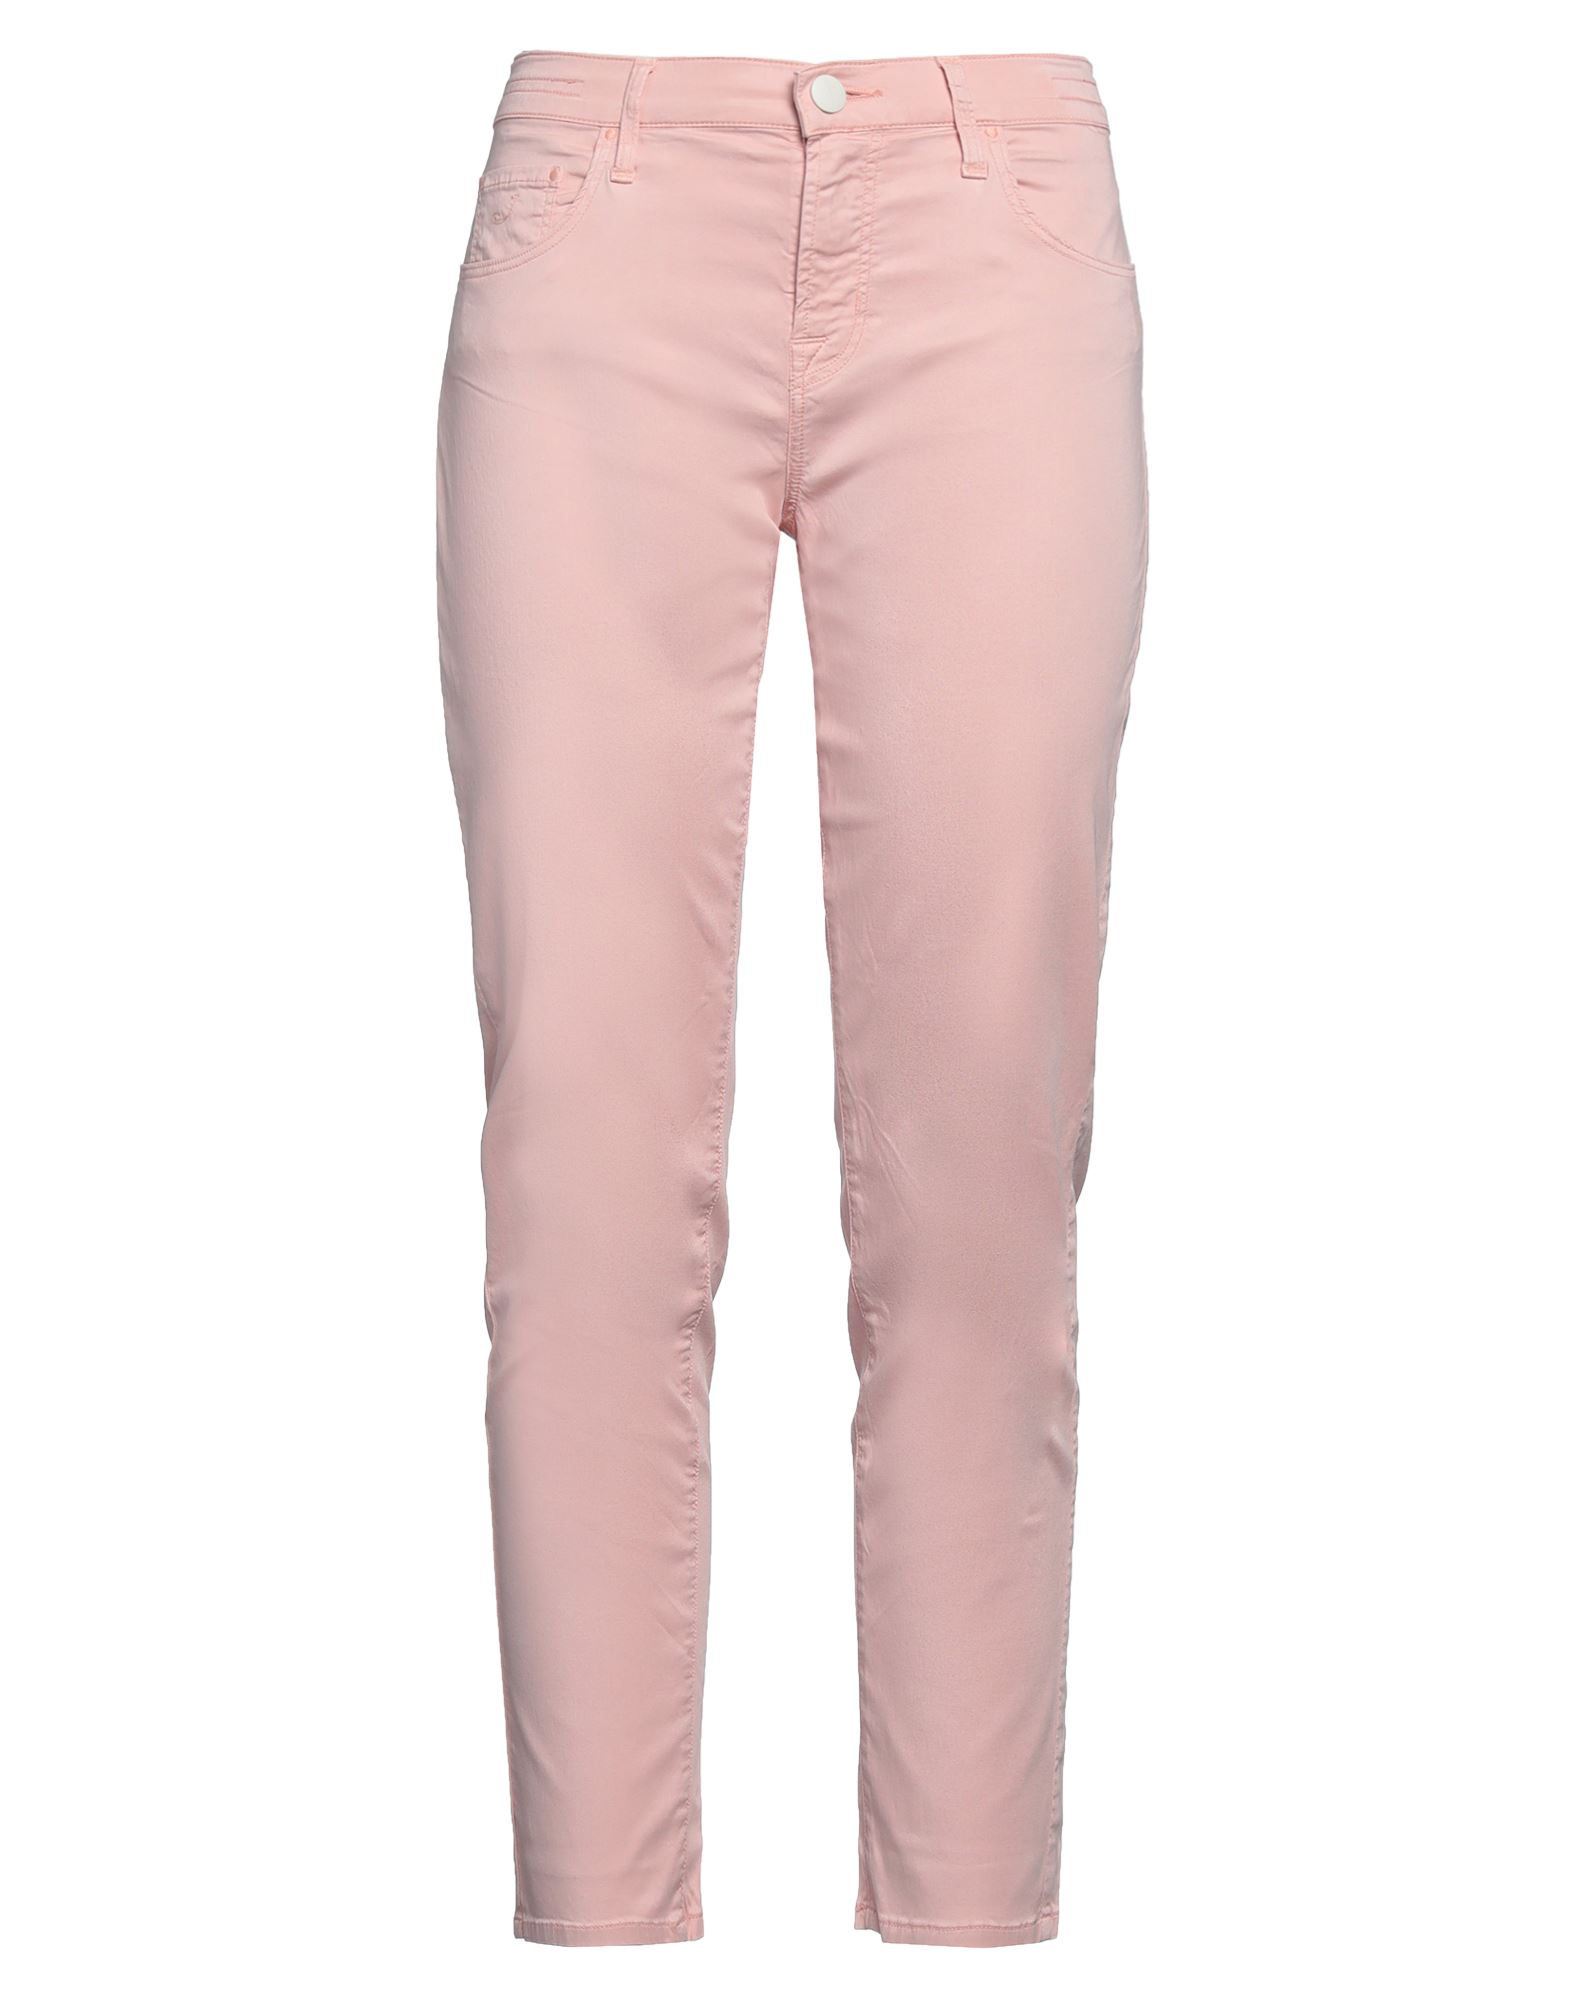 Jacob Cohёn Woman Pants Blush Size 28 Lyocell, Cotton, Elastane In Pink